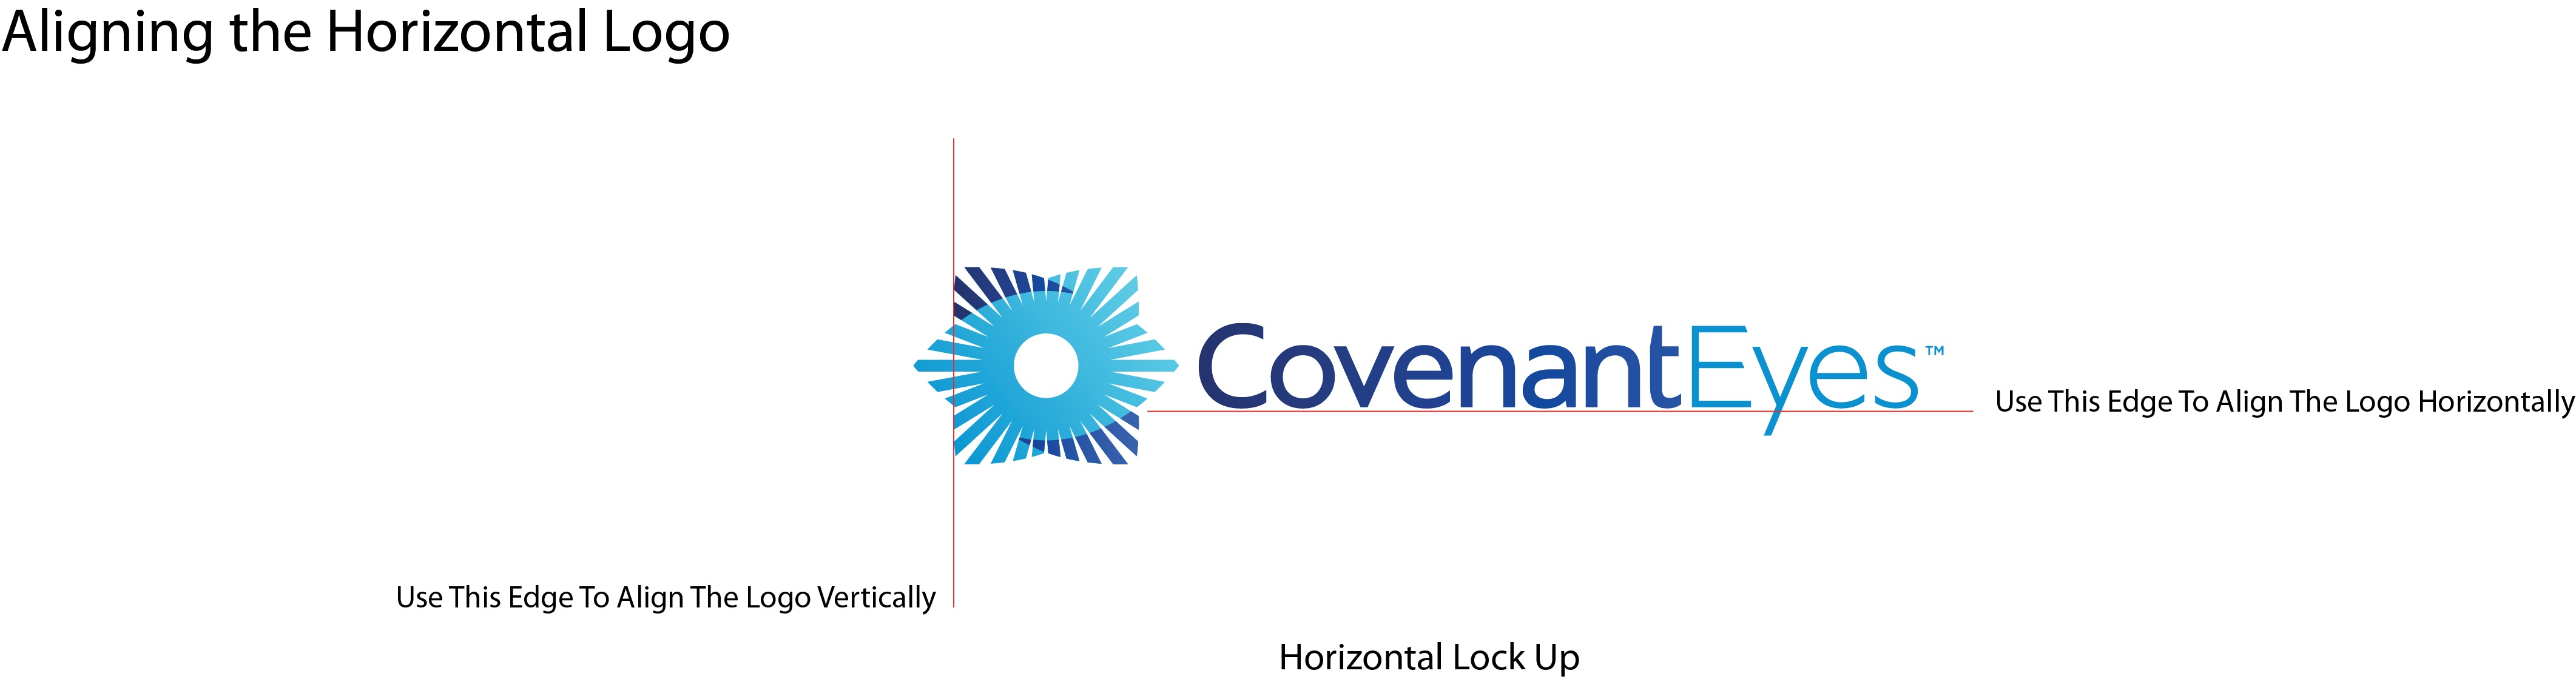 Covenant Eyes logo